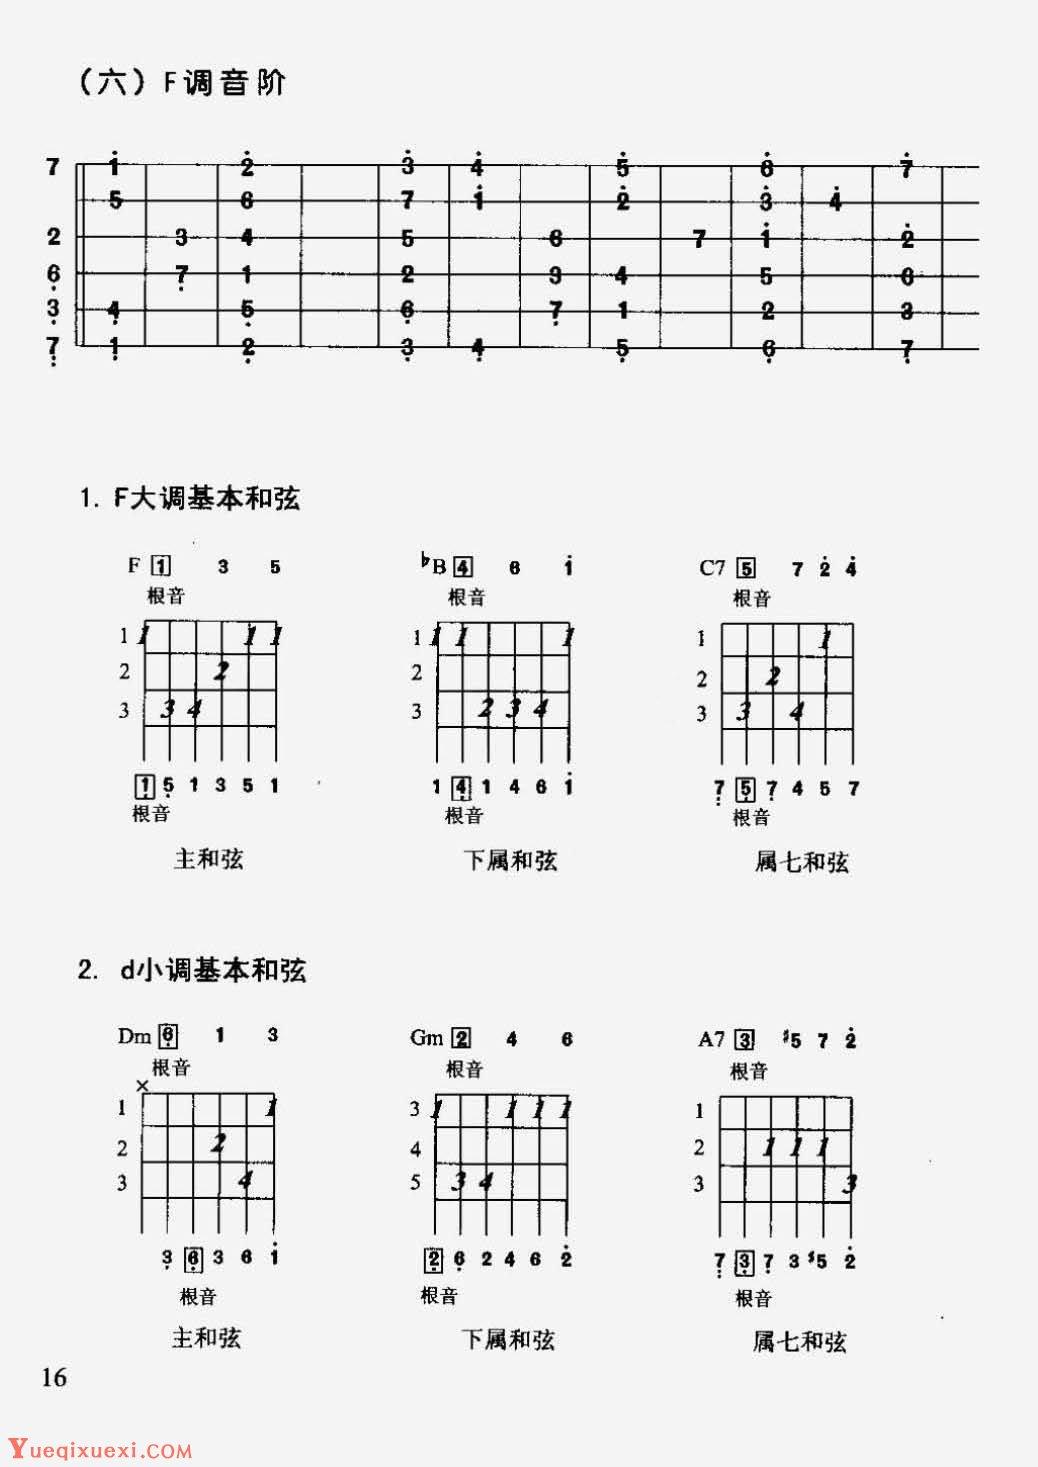 吉他和弦图表-吉他教学 - 乐器学习网